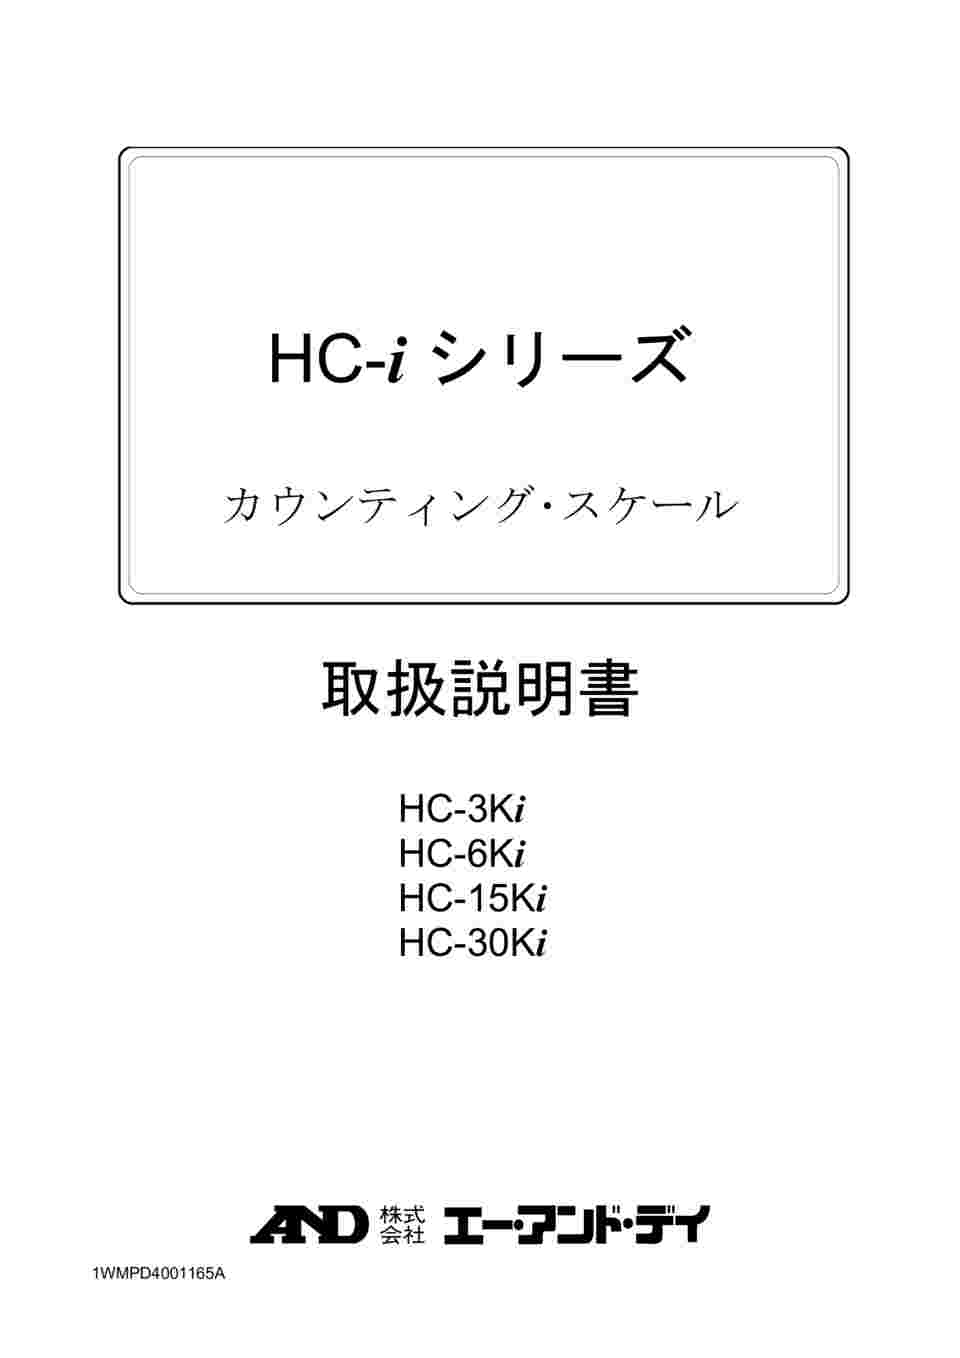 64-4049-40 セパレート可能 カウンティング・スケール(個数計) HC-i